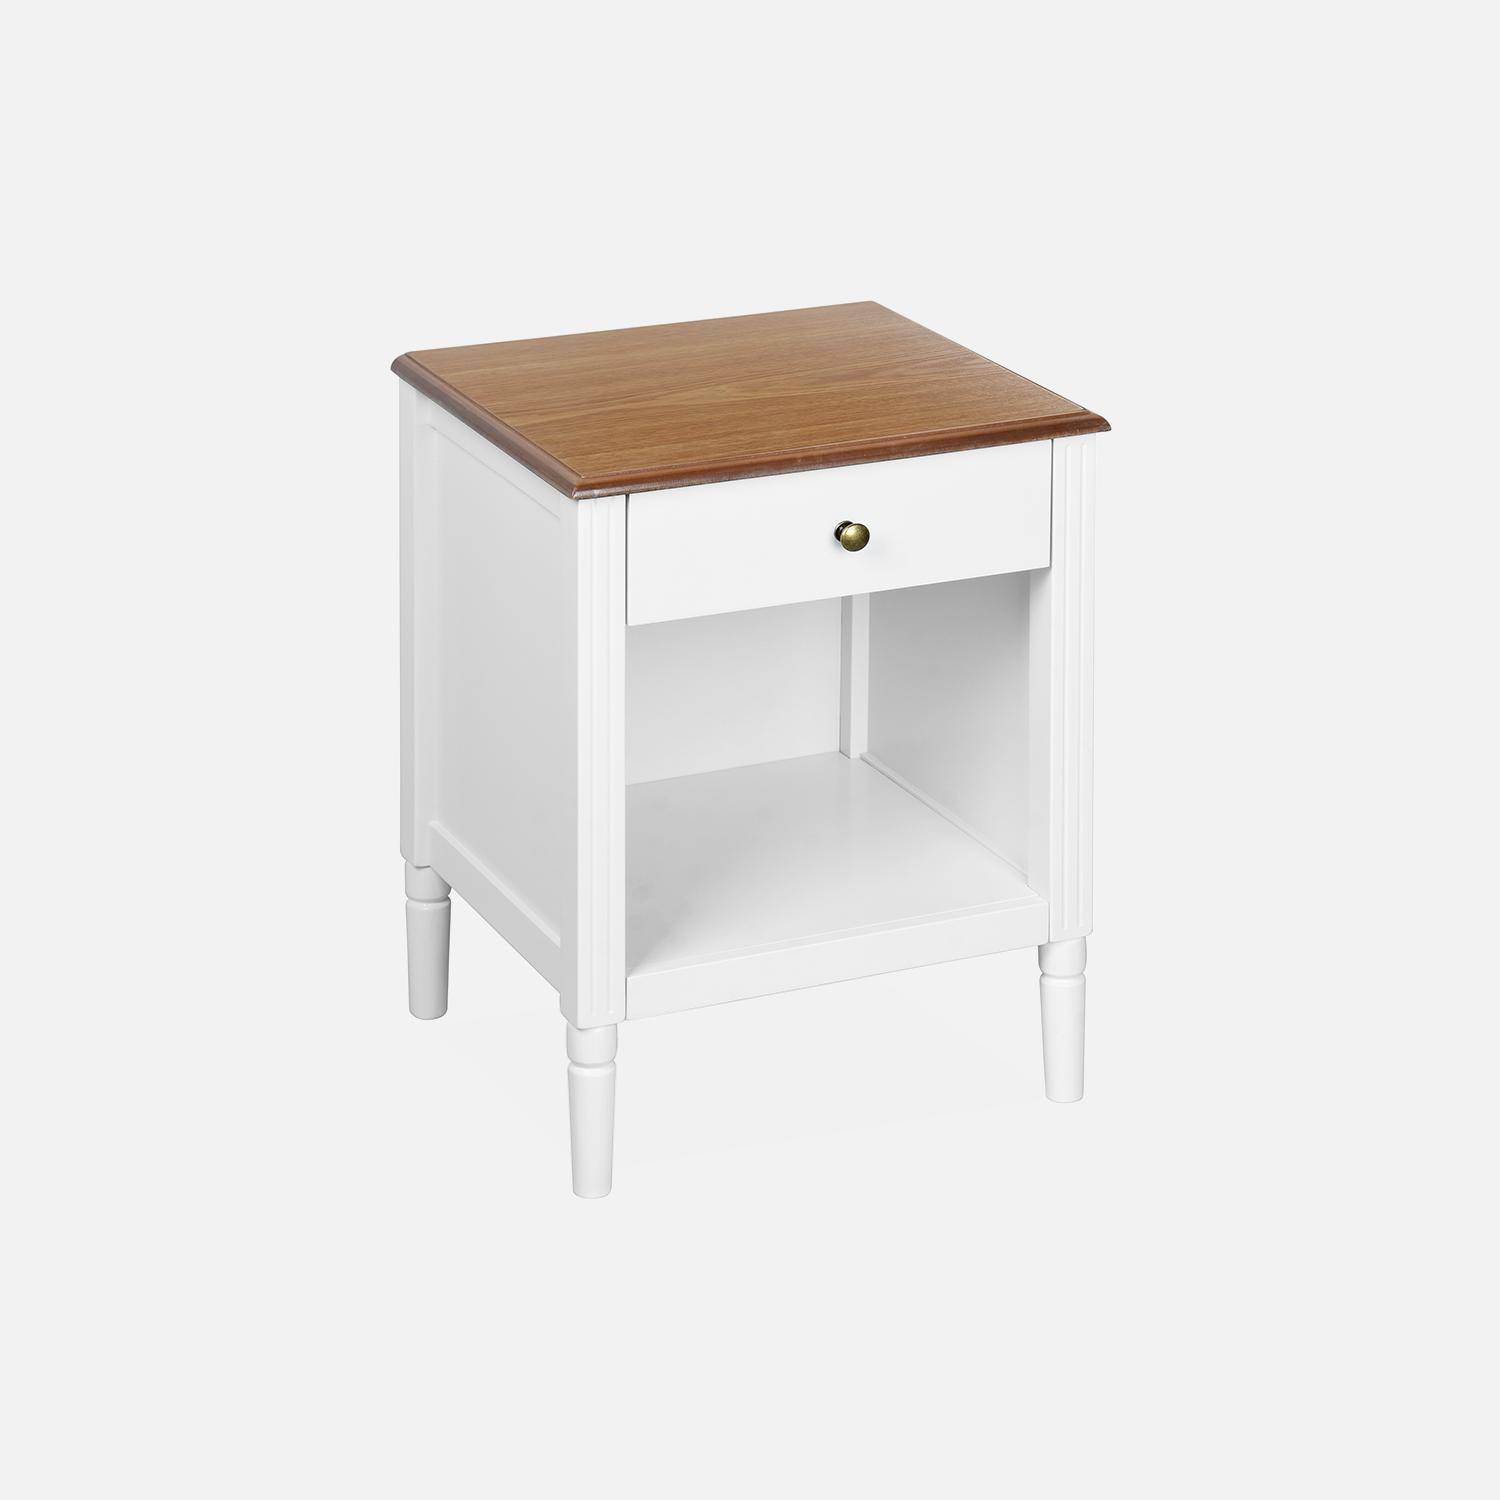 Table de chevet en placage frêne, blanc et bois, pieds en pin, 1 tiroir et 1 niche Photo3